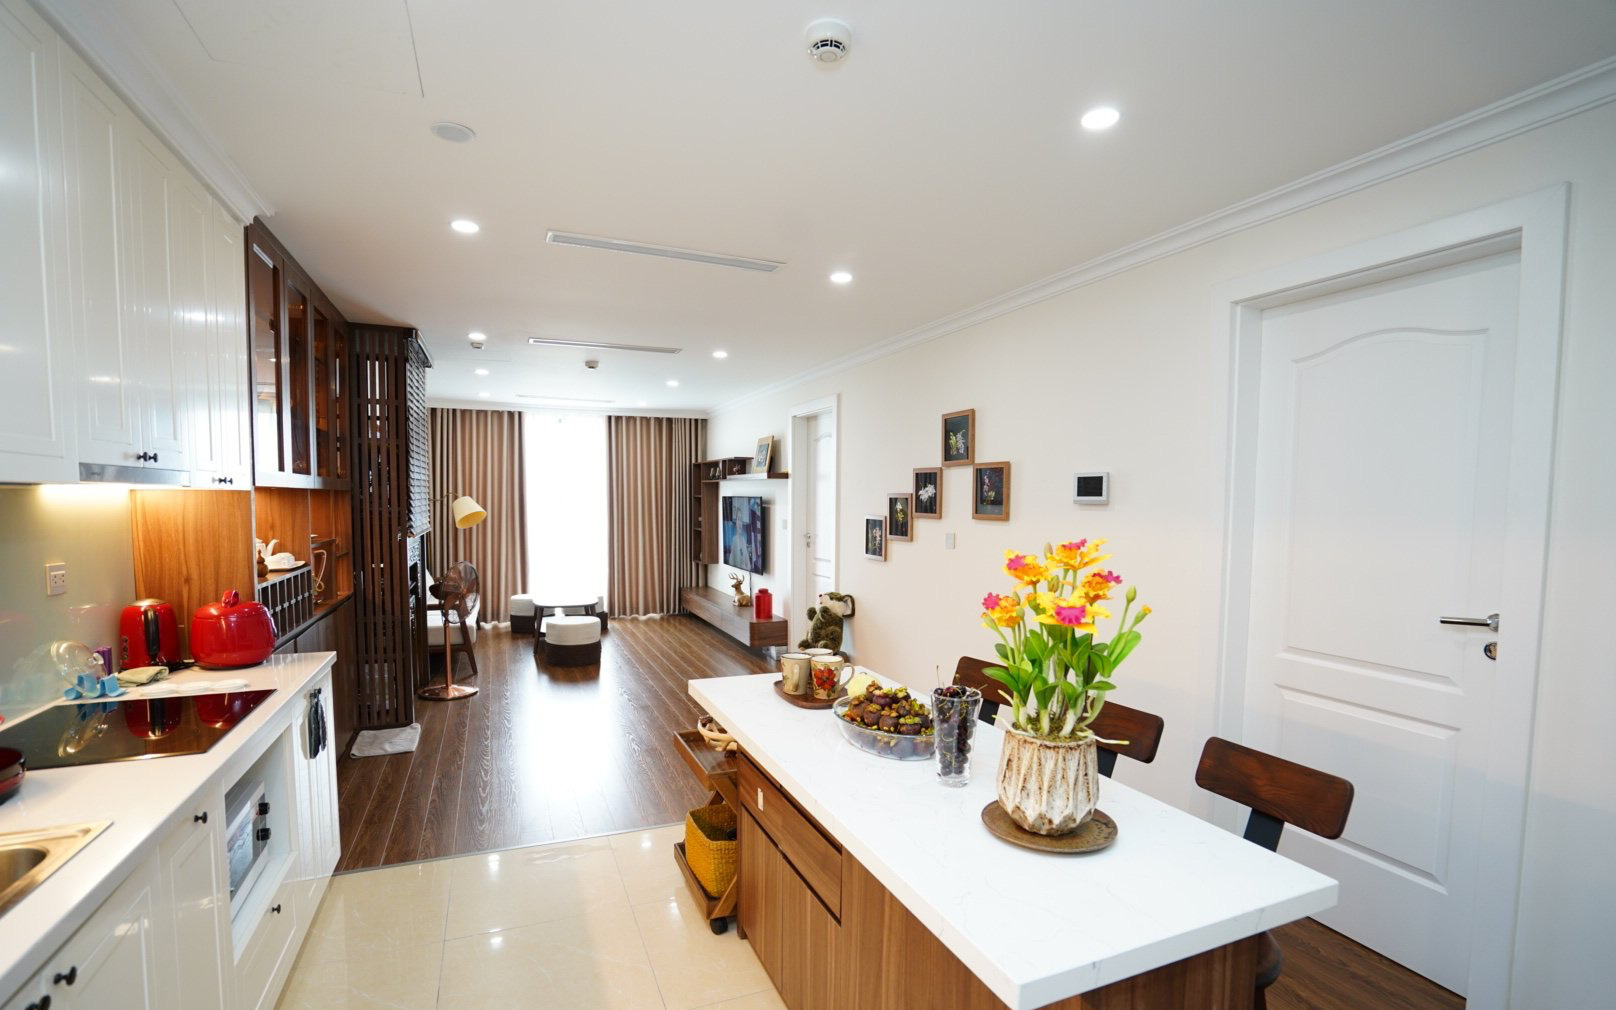 Căn hộ 107m² đẹp sang trọng với nội thất gỗ, chi phí hoàn thiện 150 triệu đồng ở Hà Nội